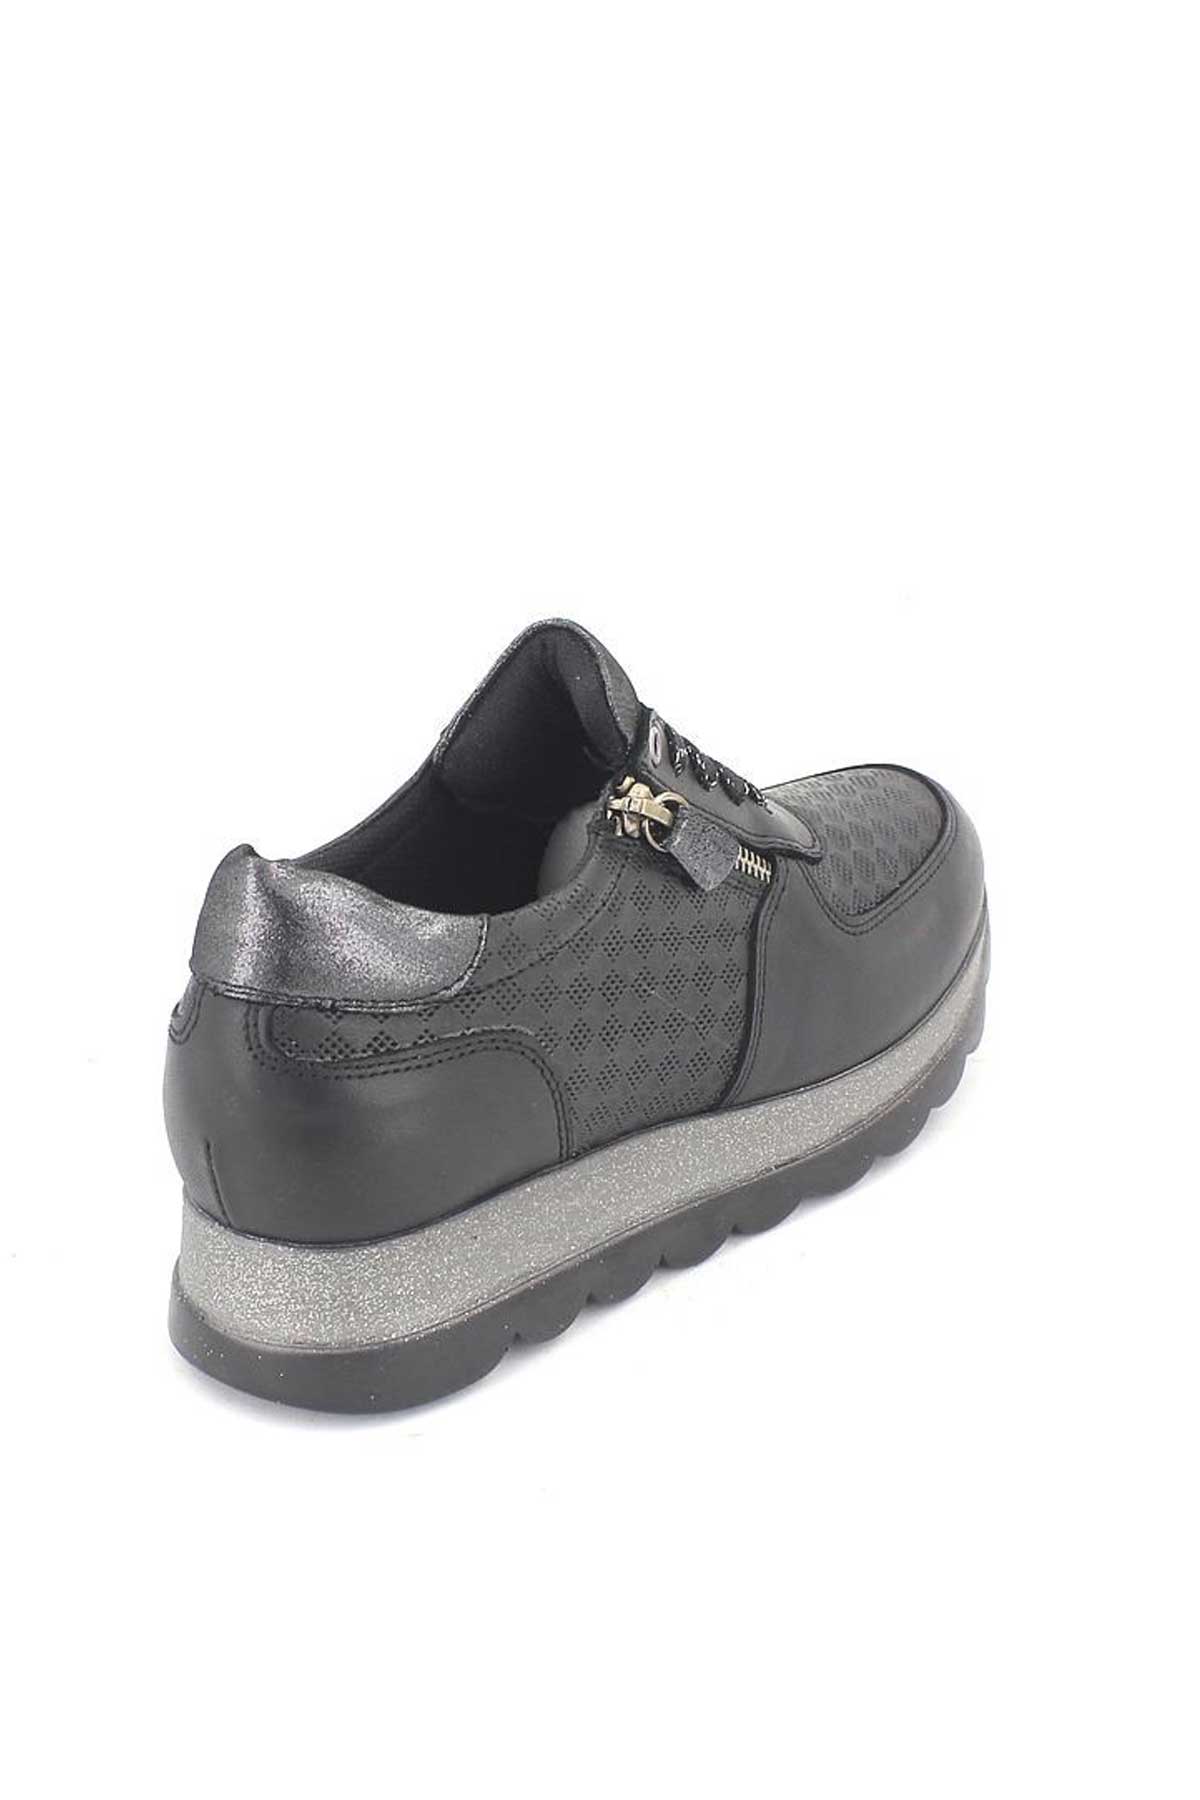 Kadın Deri Sneakers Ayakkabı Siyah 2076202Y